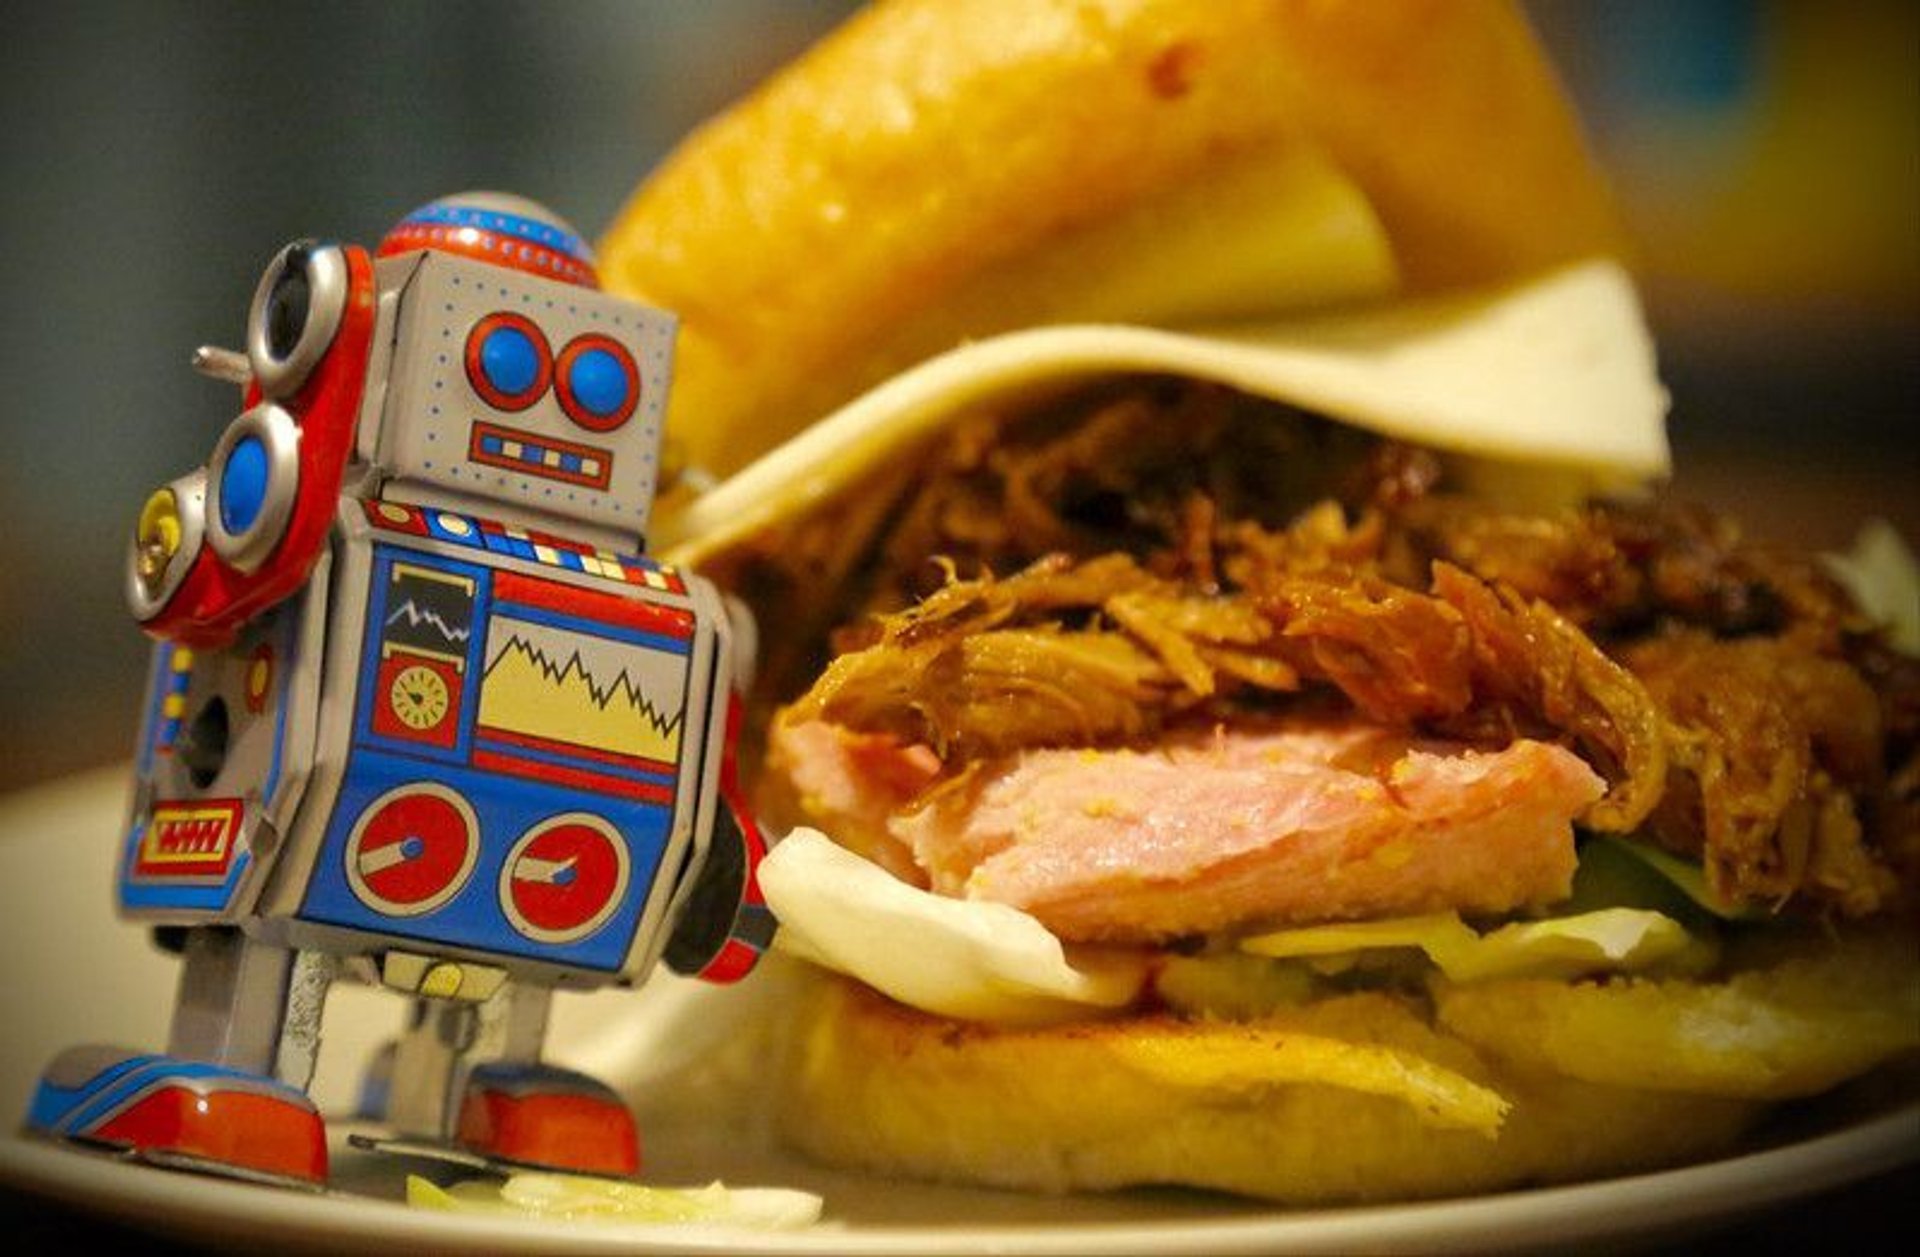 Robot i obrzydliwa kanapka w tle